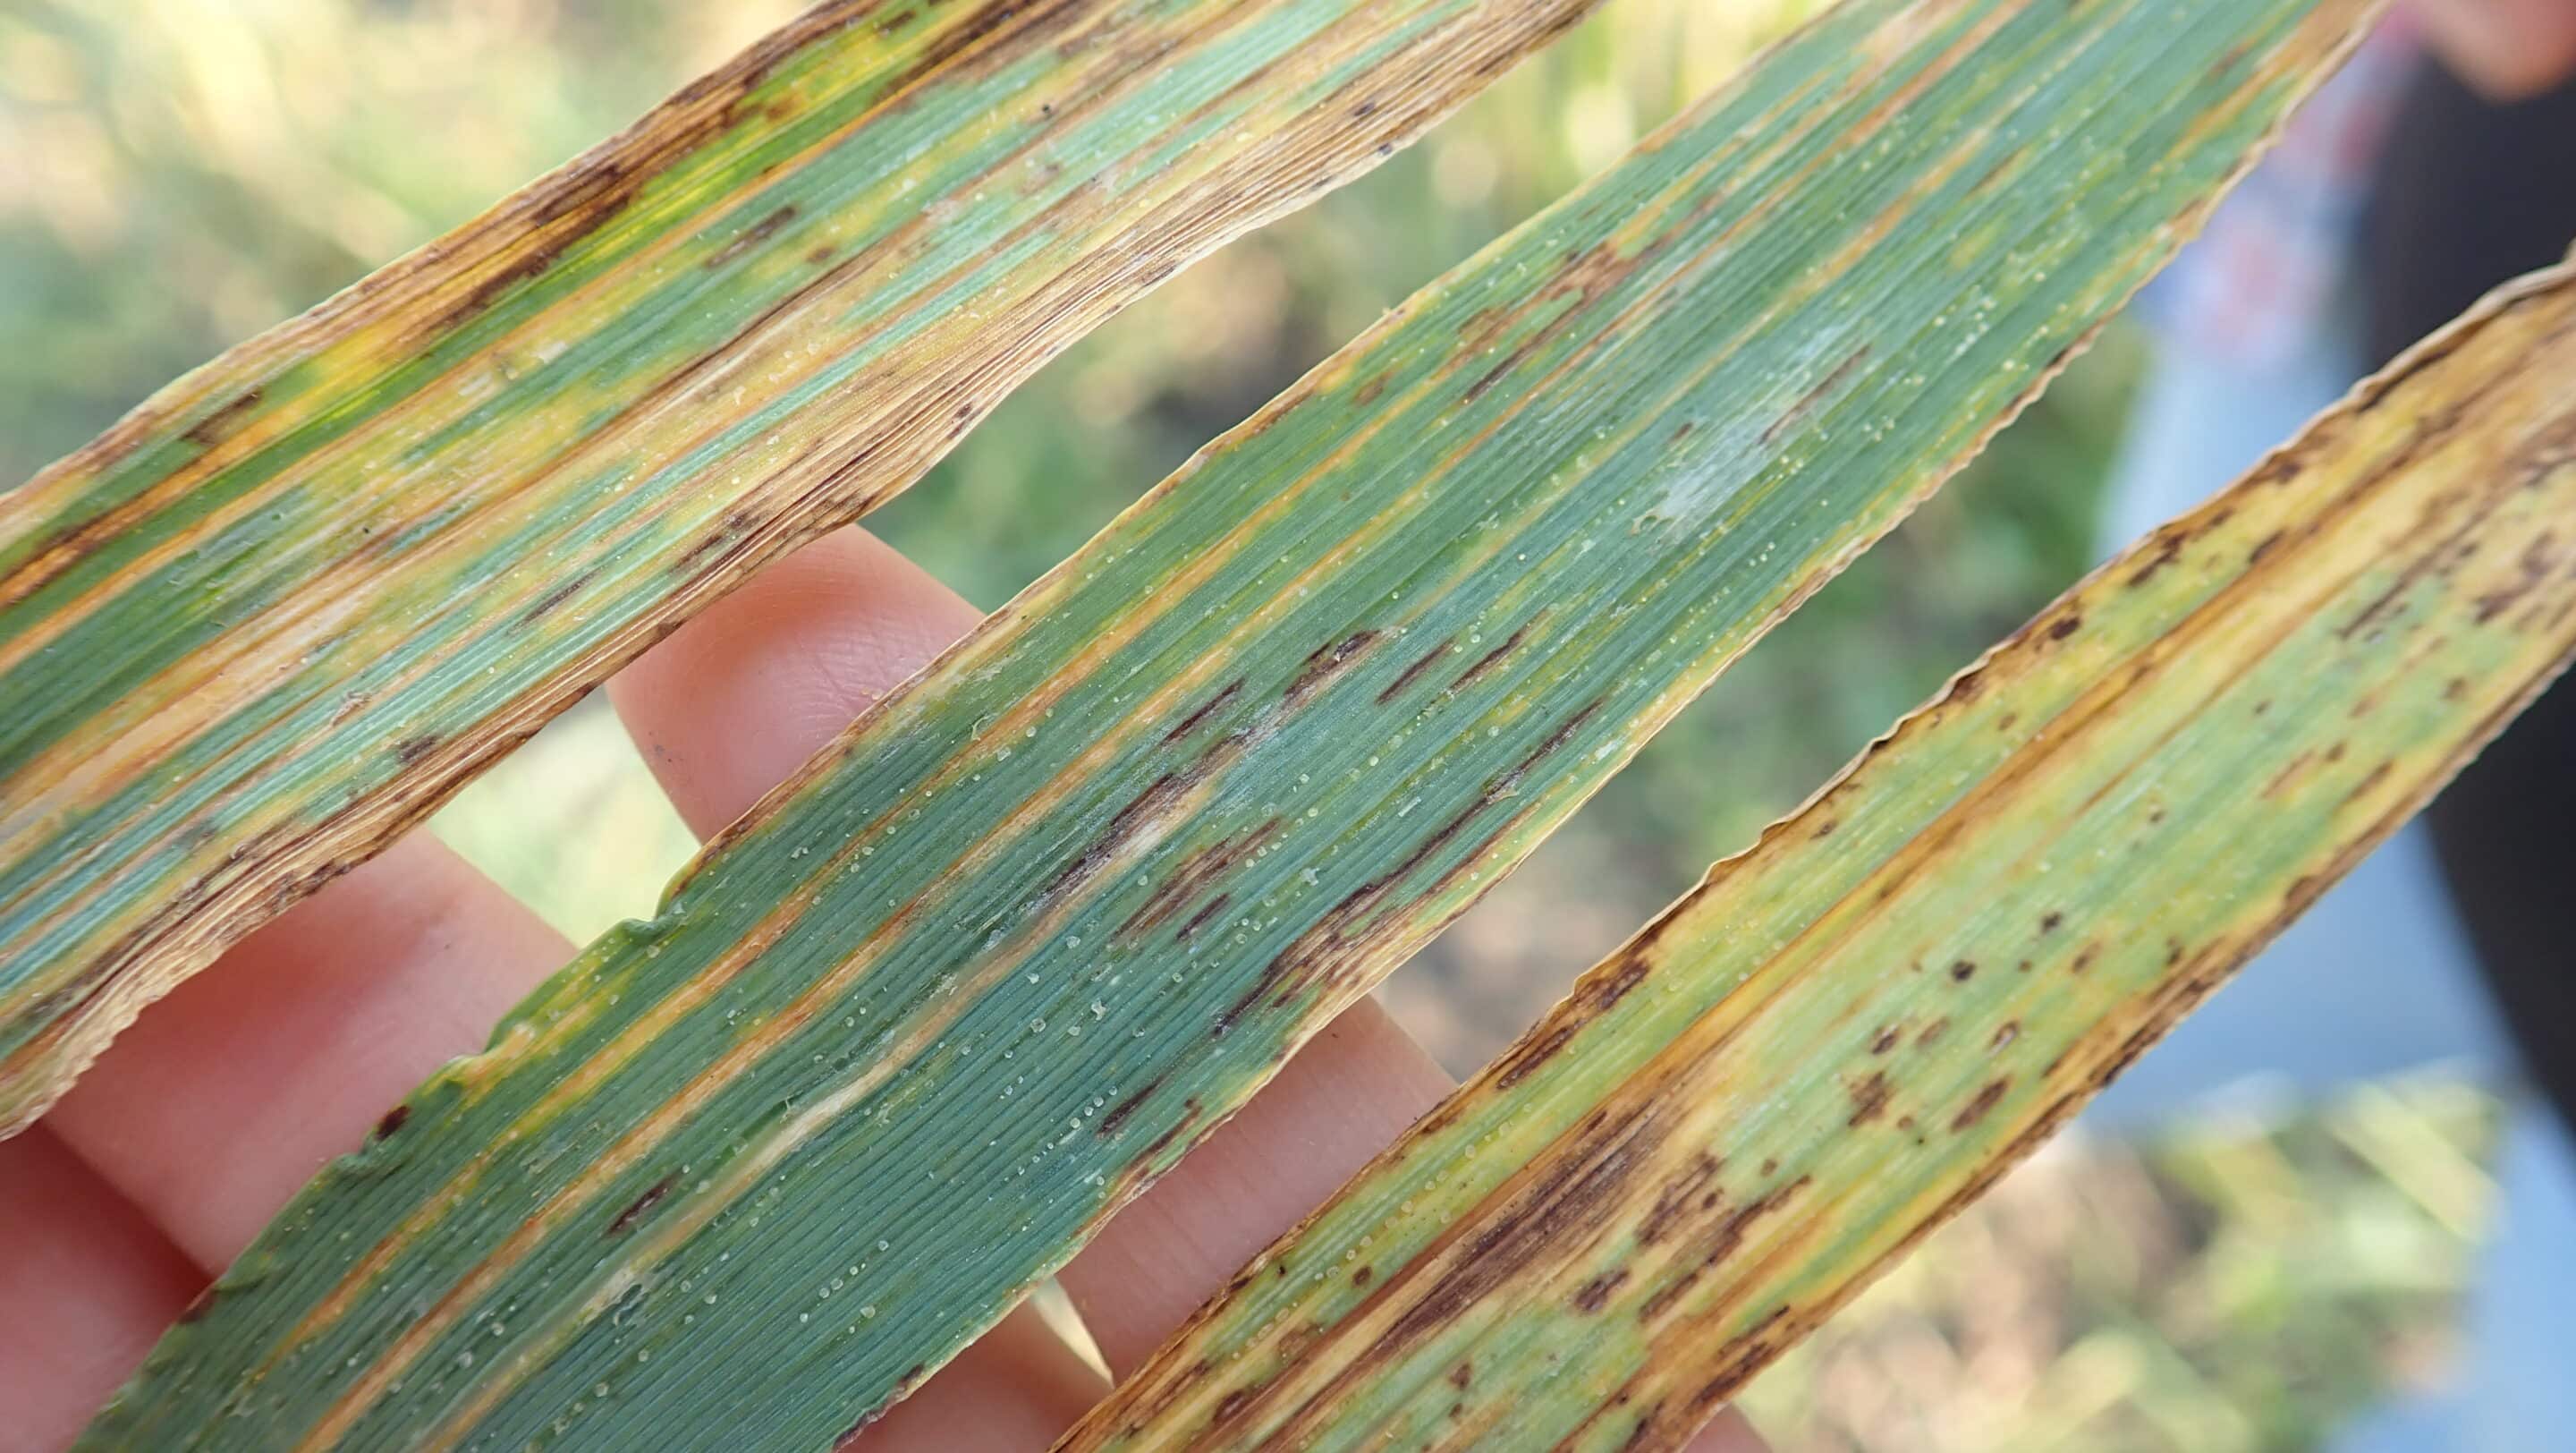 Bacterial leaf streak infected barley